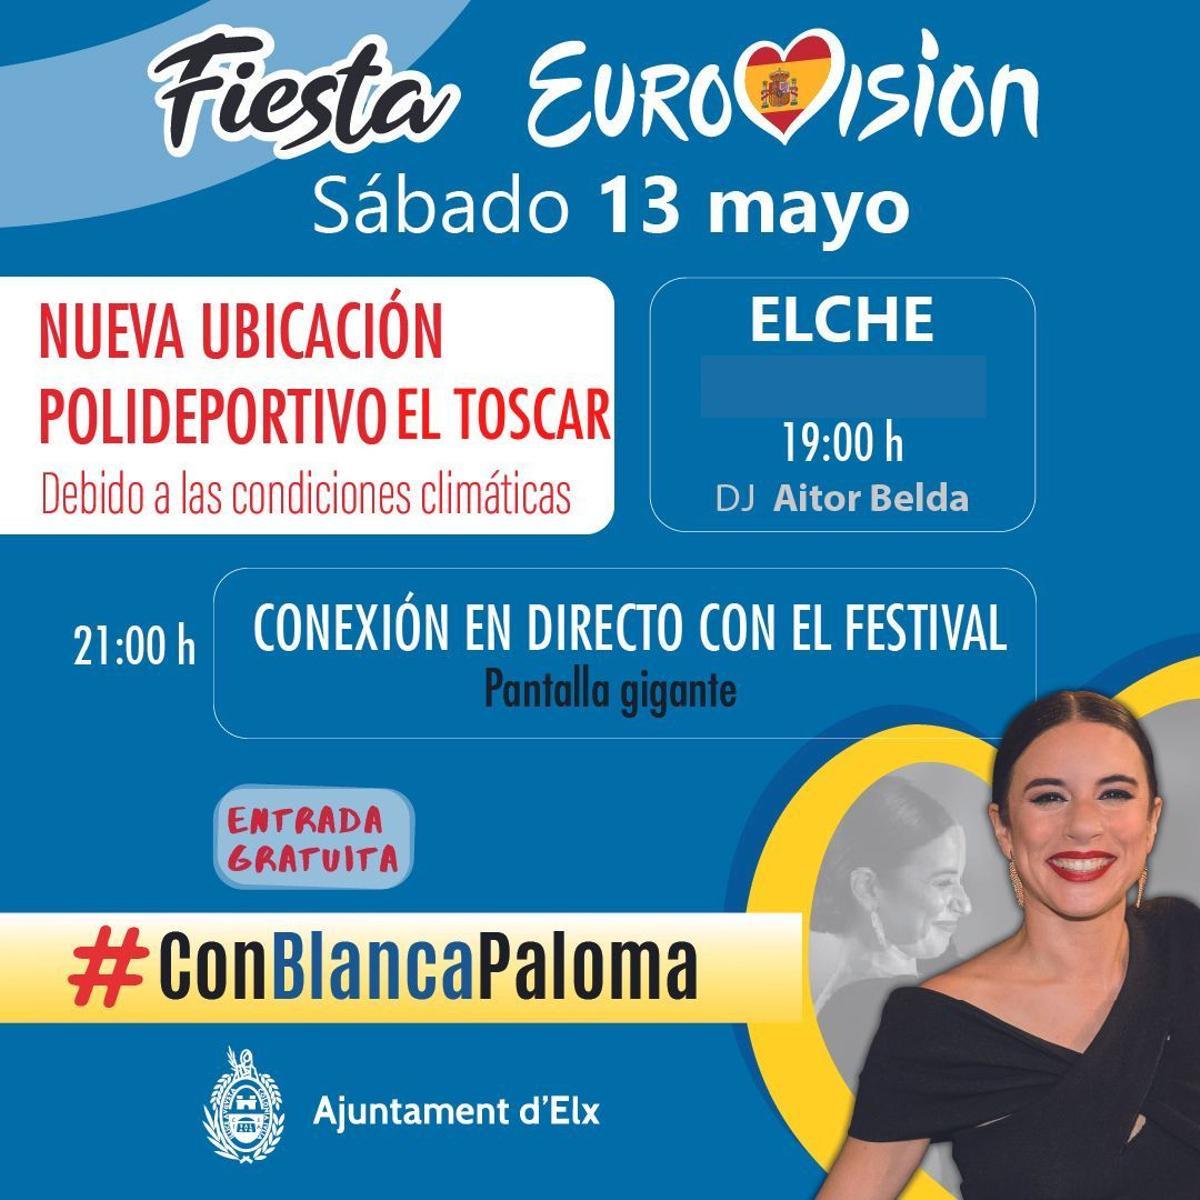 El anuncio municipal del traslado de la fiesta al polideportivo de El Toscar para la actuación de Blanca Paloma en Eurovisión